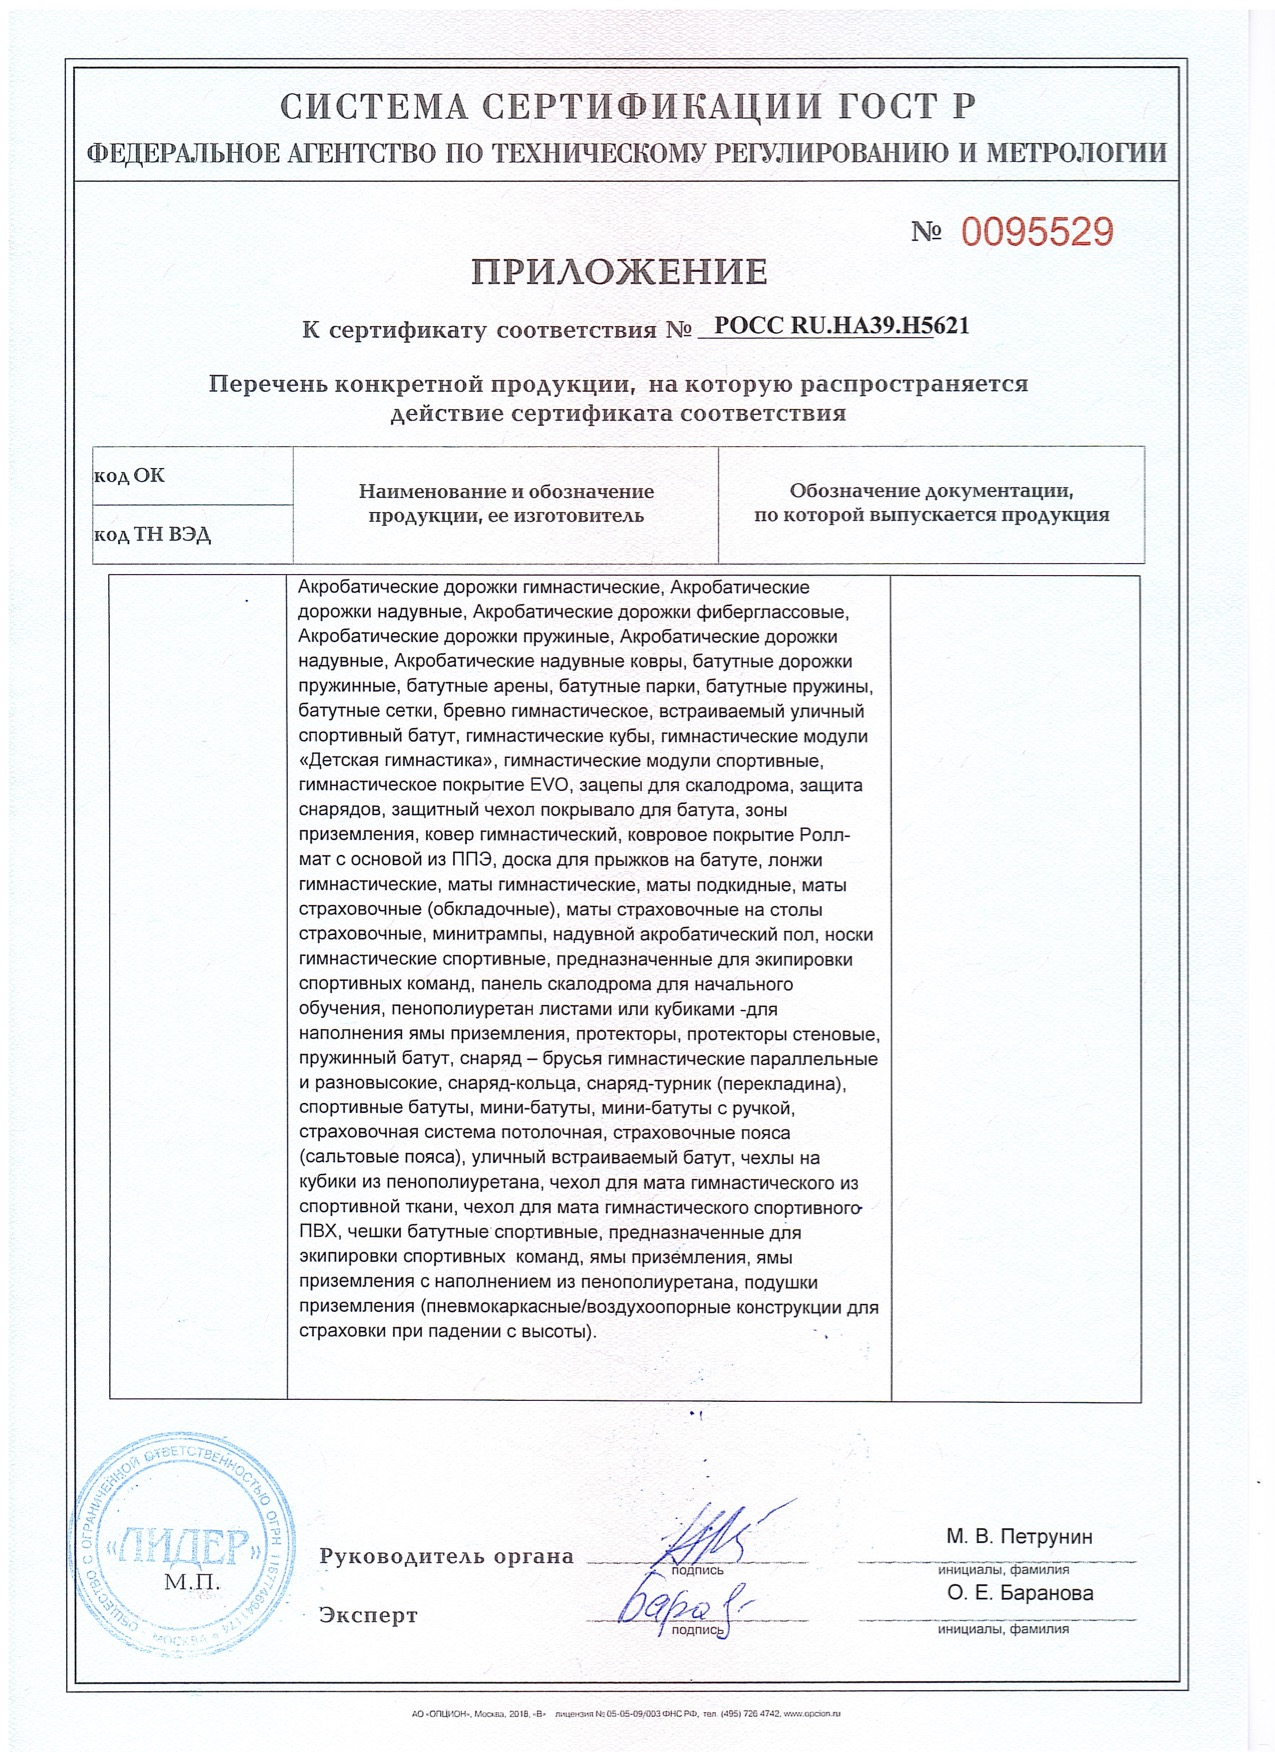 Сертификат "ГОСТ Р" (для России) - ВСЕ ГИМНАСТИЧЕСКОЕ ОБОРУДОВАНИЕ - приложение 